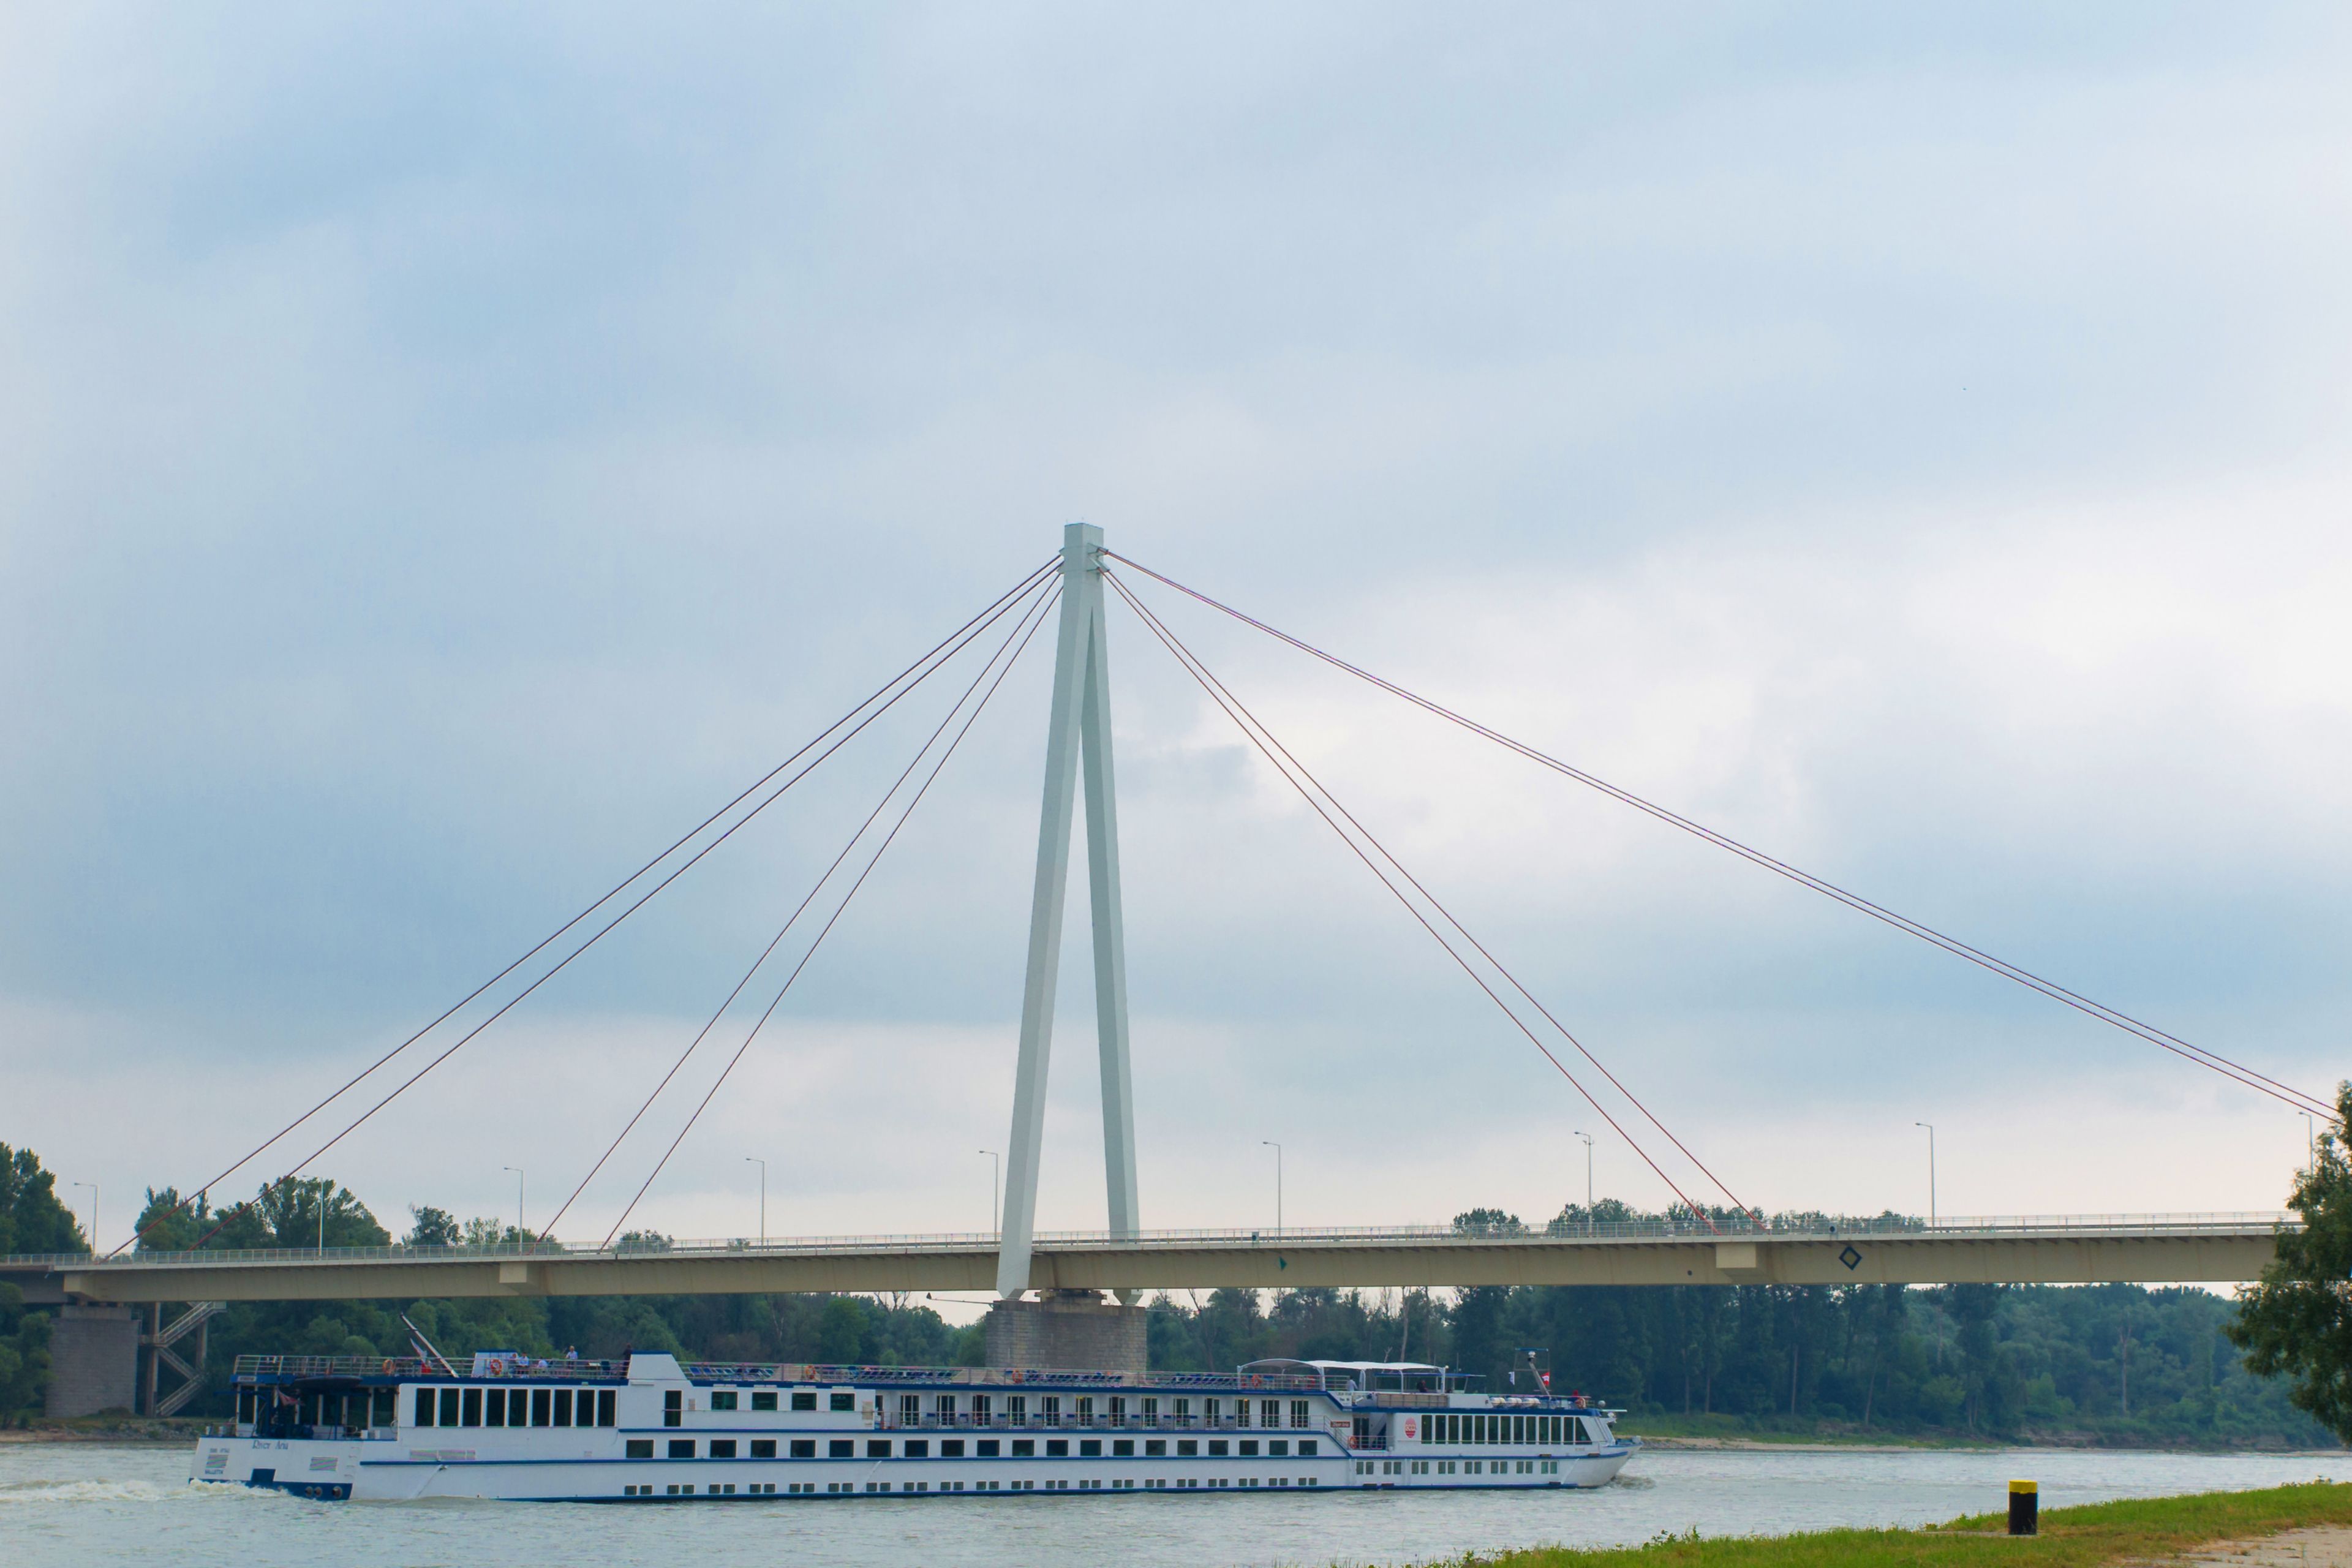 Andreas-Maurer-Brücke Hainburg mit einer Spannweite von 228 m